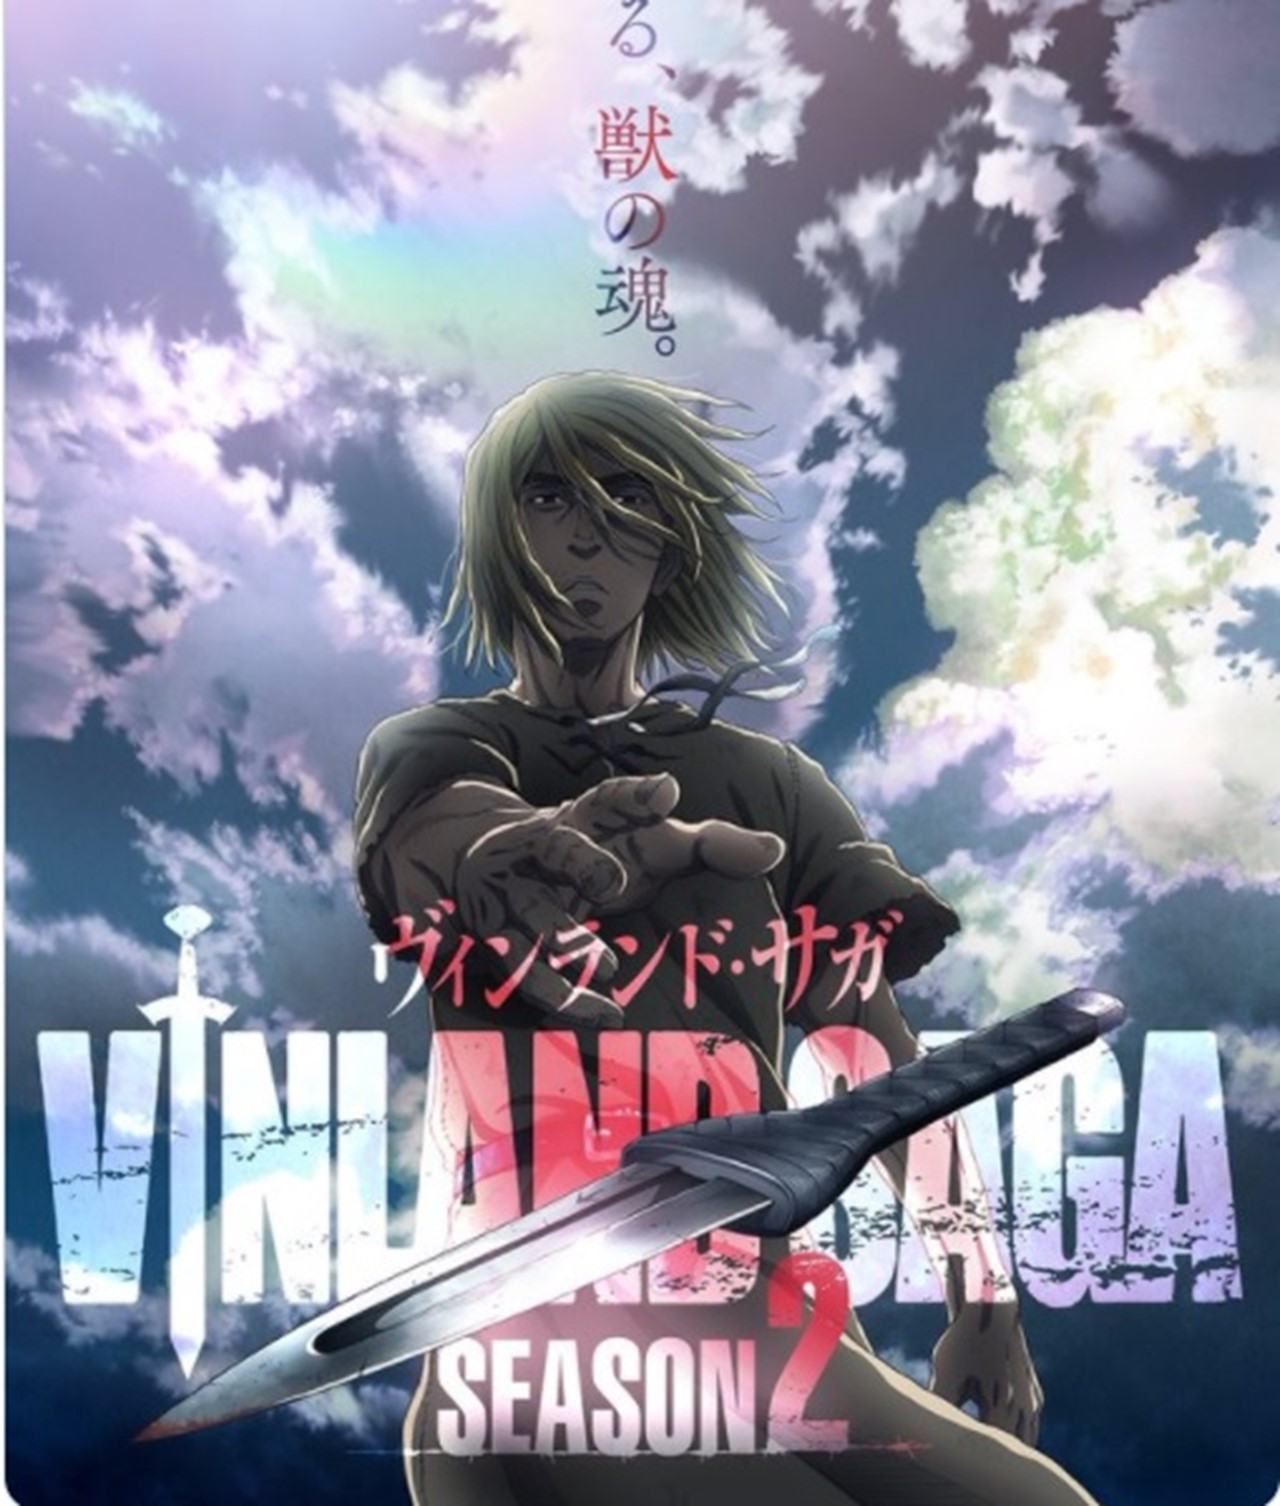 Vinland Saga: Season 2 Episodes Guide - Release Dates, Times & More